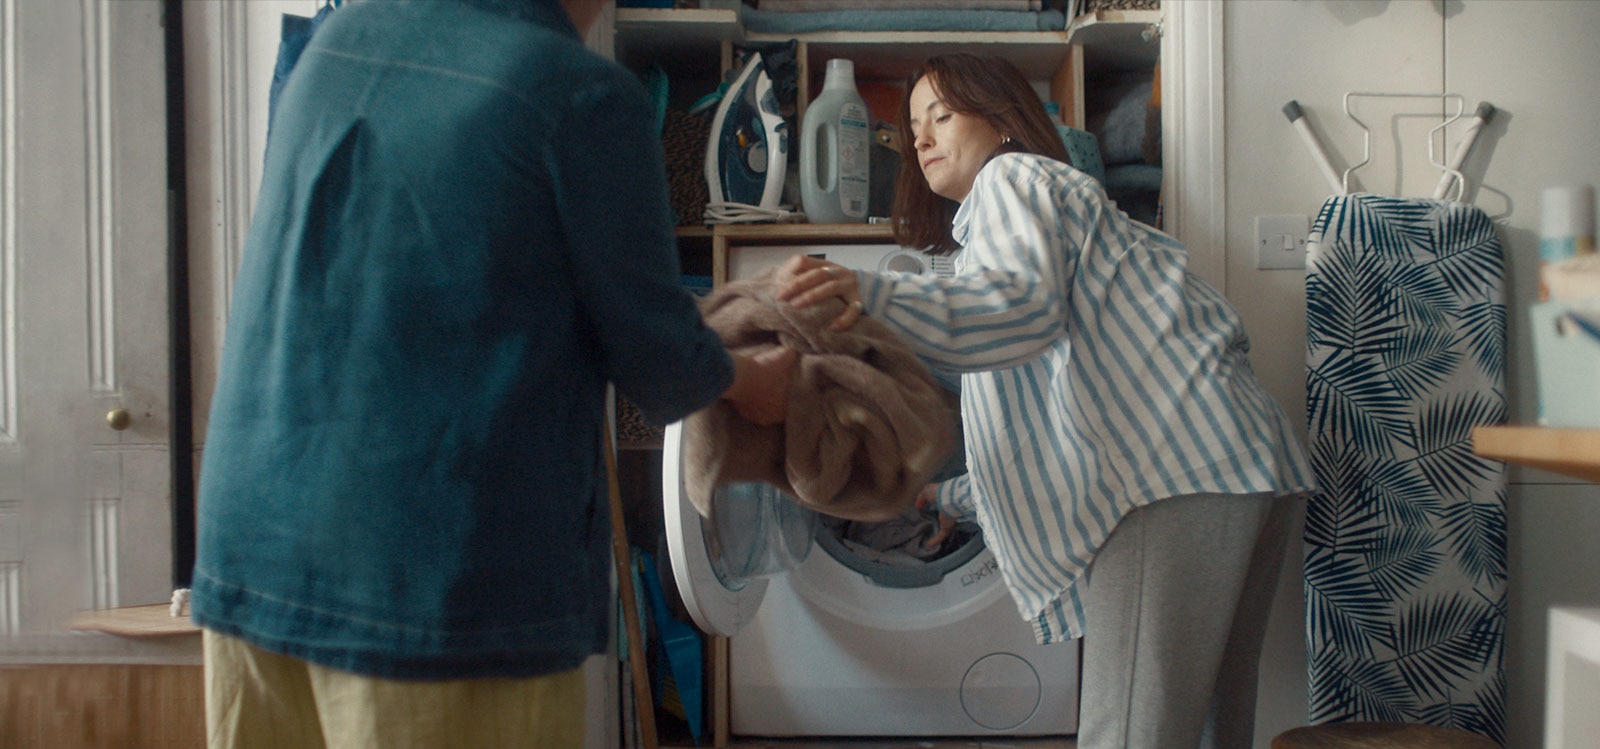 Una donna toglie il bucato dalla lavatrice e lo porge alla madre.